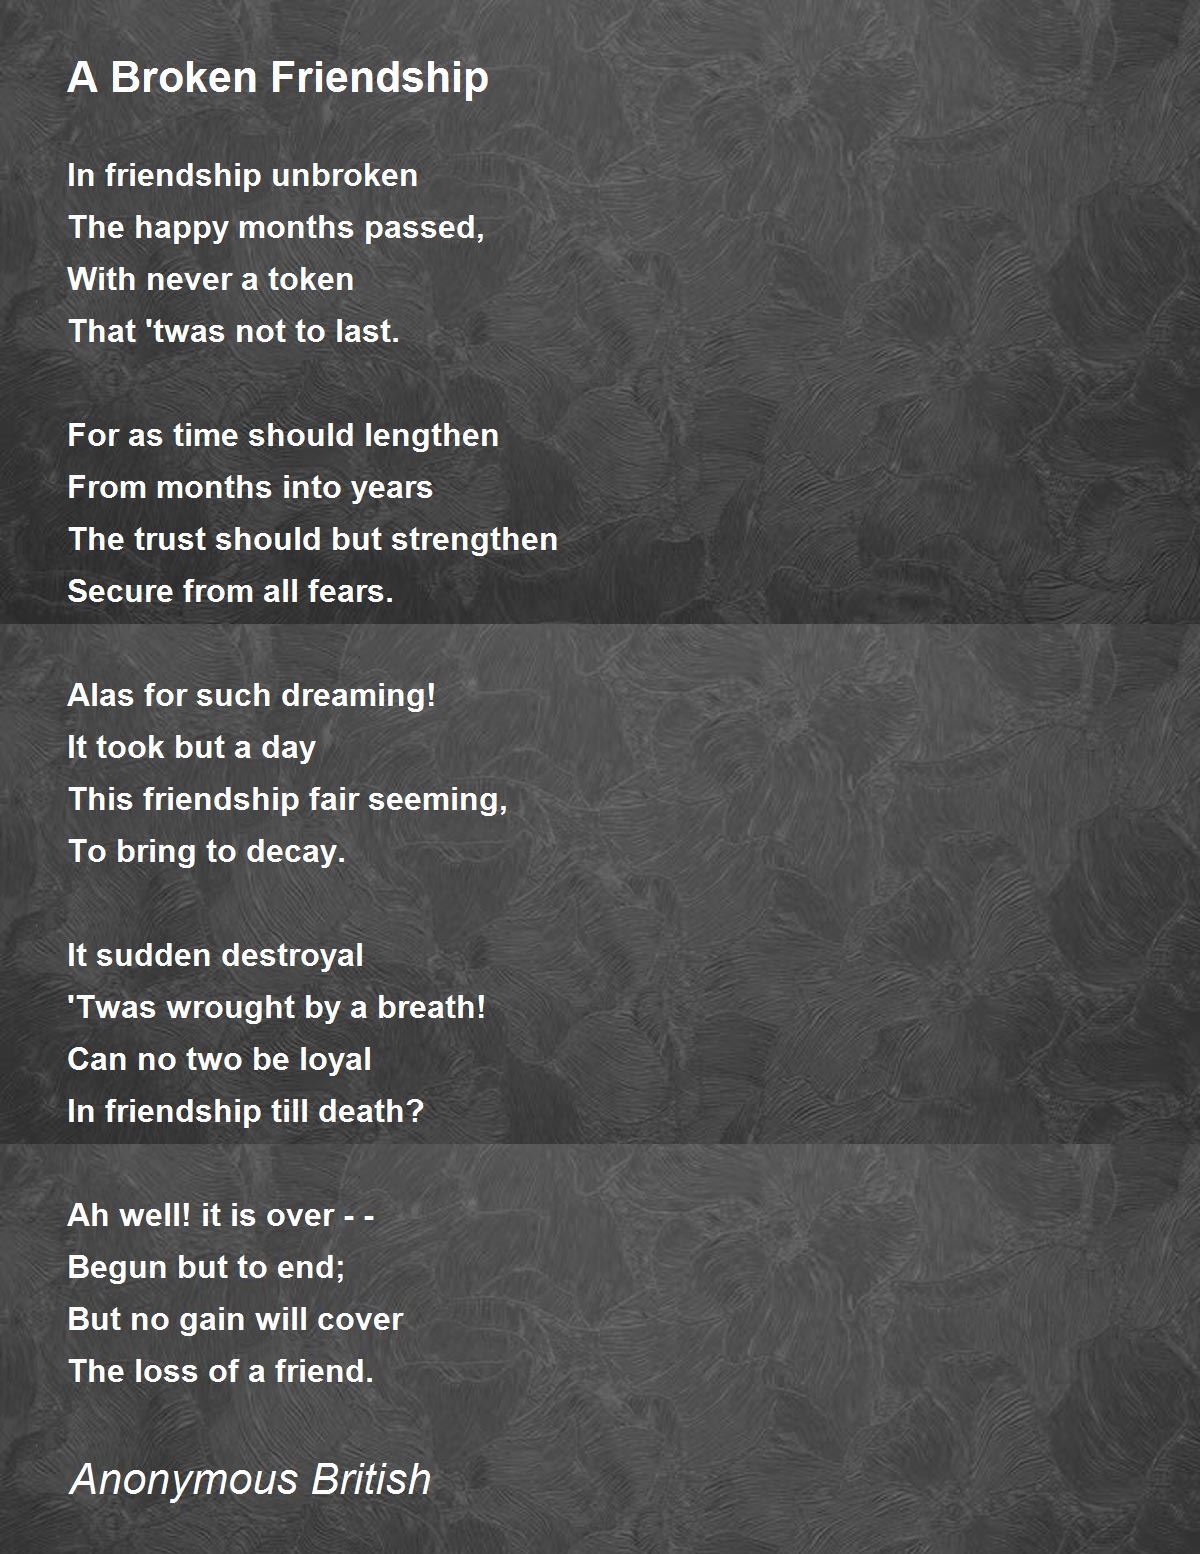 A Broken Friendship - A Broken Friendship Poem by Anonymous British